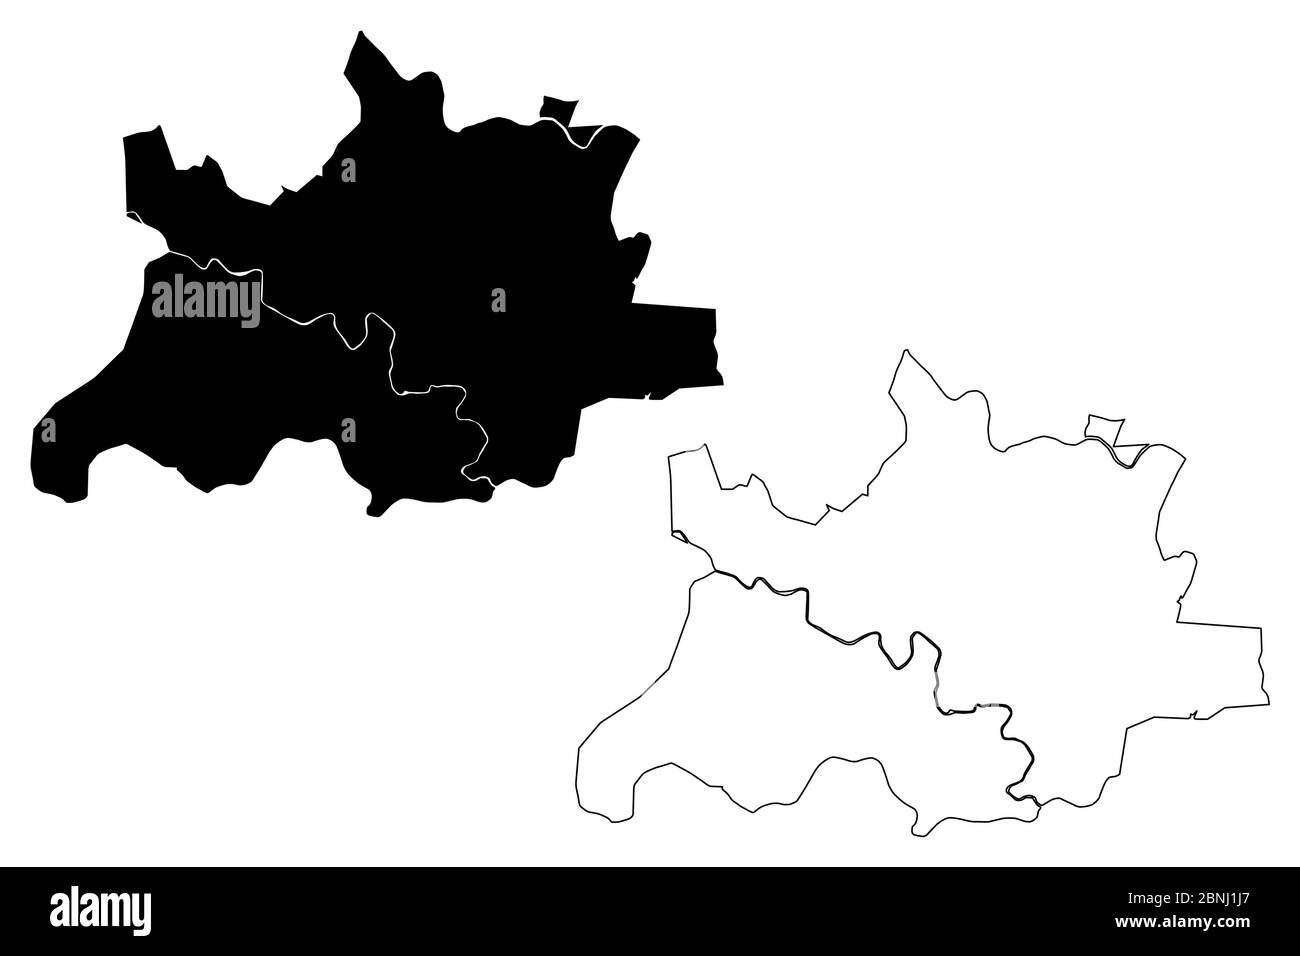 Pimpri-Chinchwad Città (Repubblica dell'India, Stato Maharashtra) mappa vettoriale illustrazione, abbozzare città di Pimpri Chinchwad, mappa di Pune Illustrazione Vettoriale